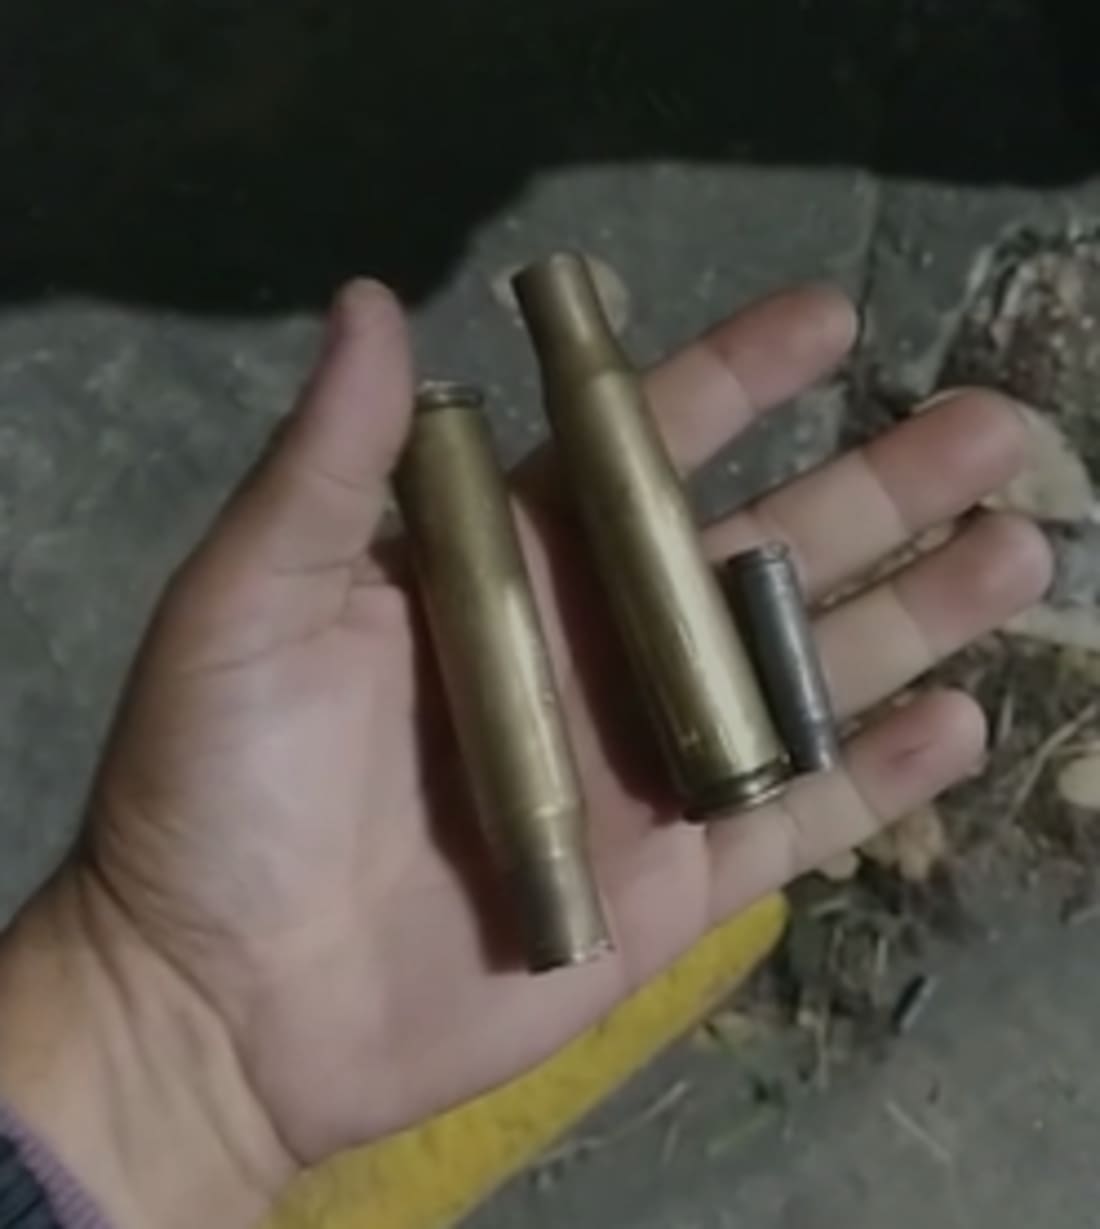 Munição de fuzil encontrada em Itajubá